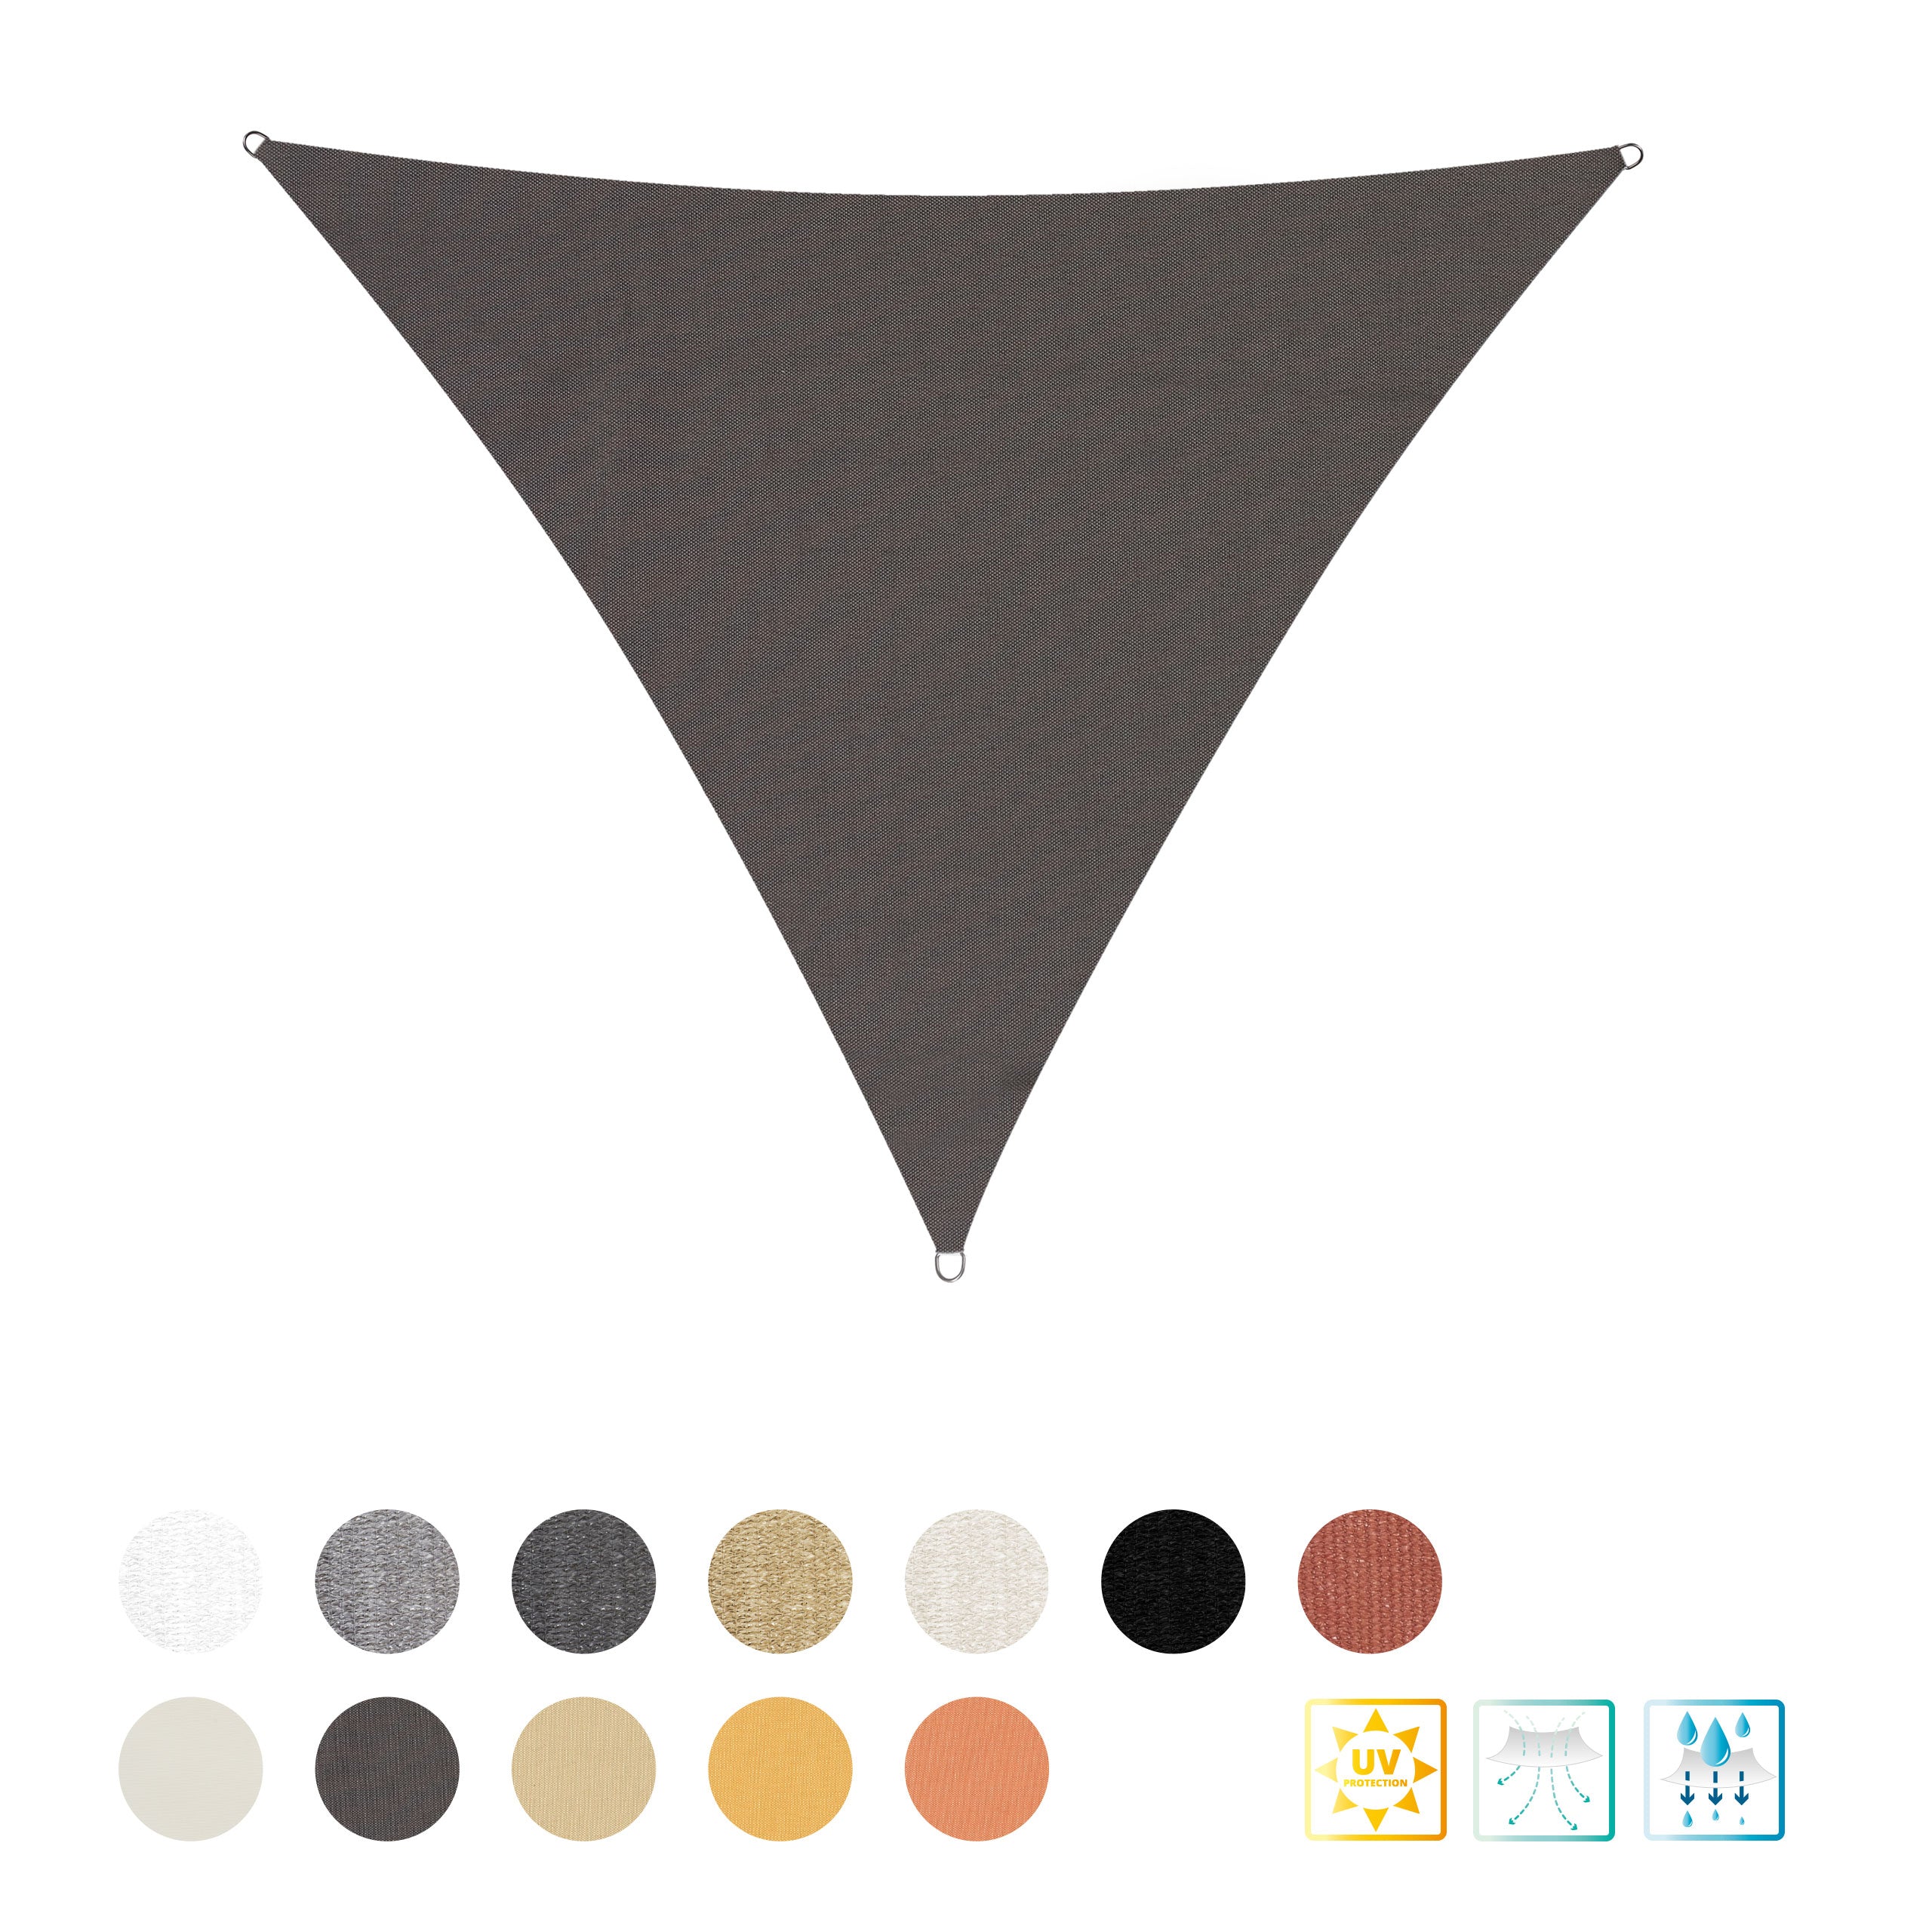 Sonnensegel Polyester - Dreieck 3 x 3 x 3 Meter - Dunkelgrau